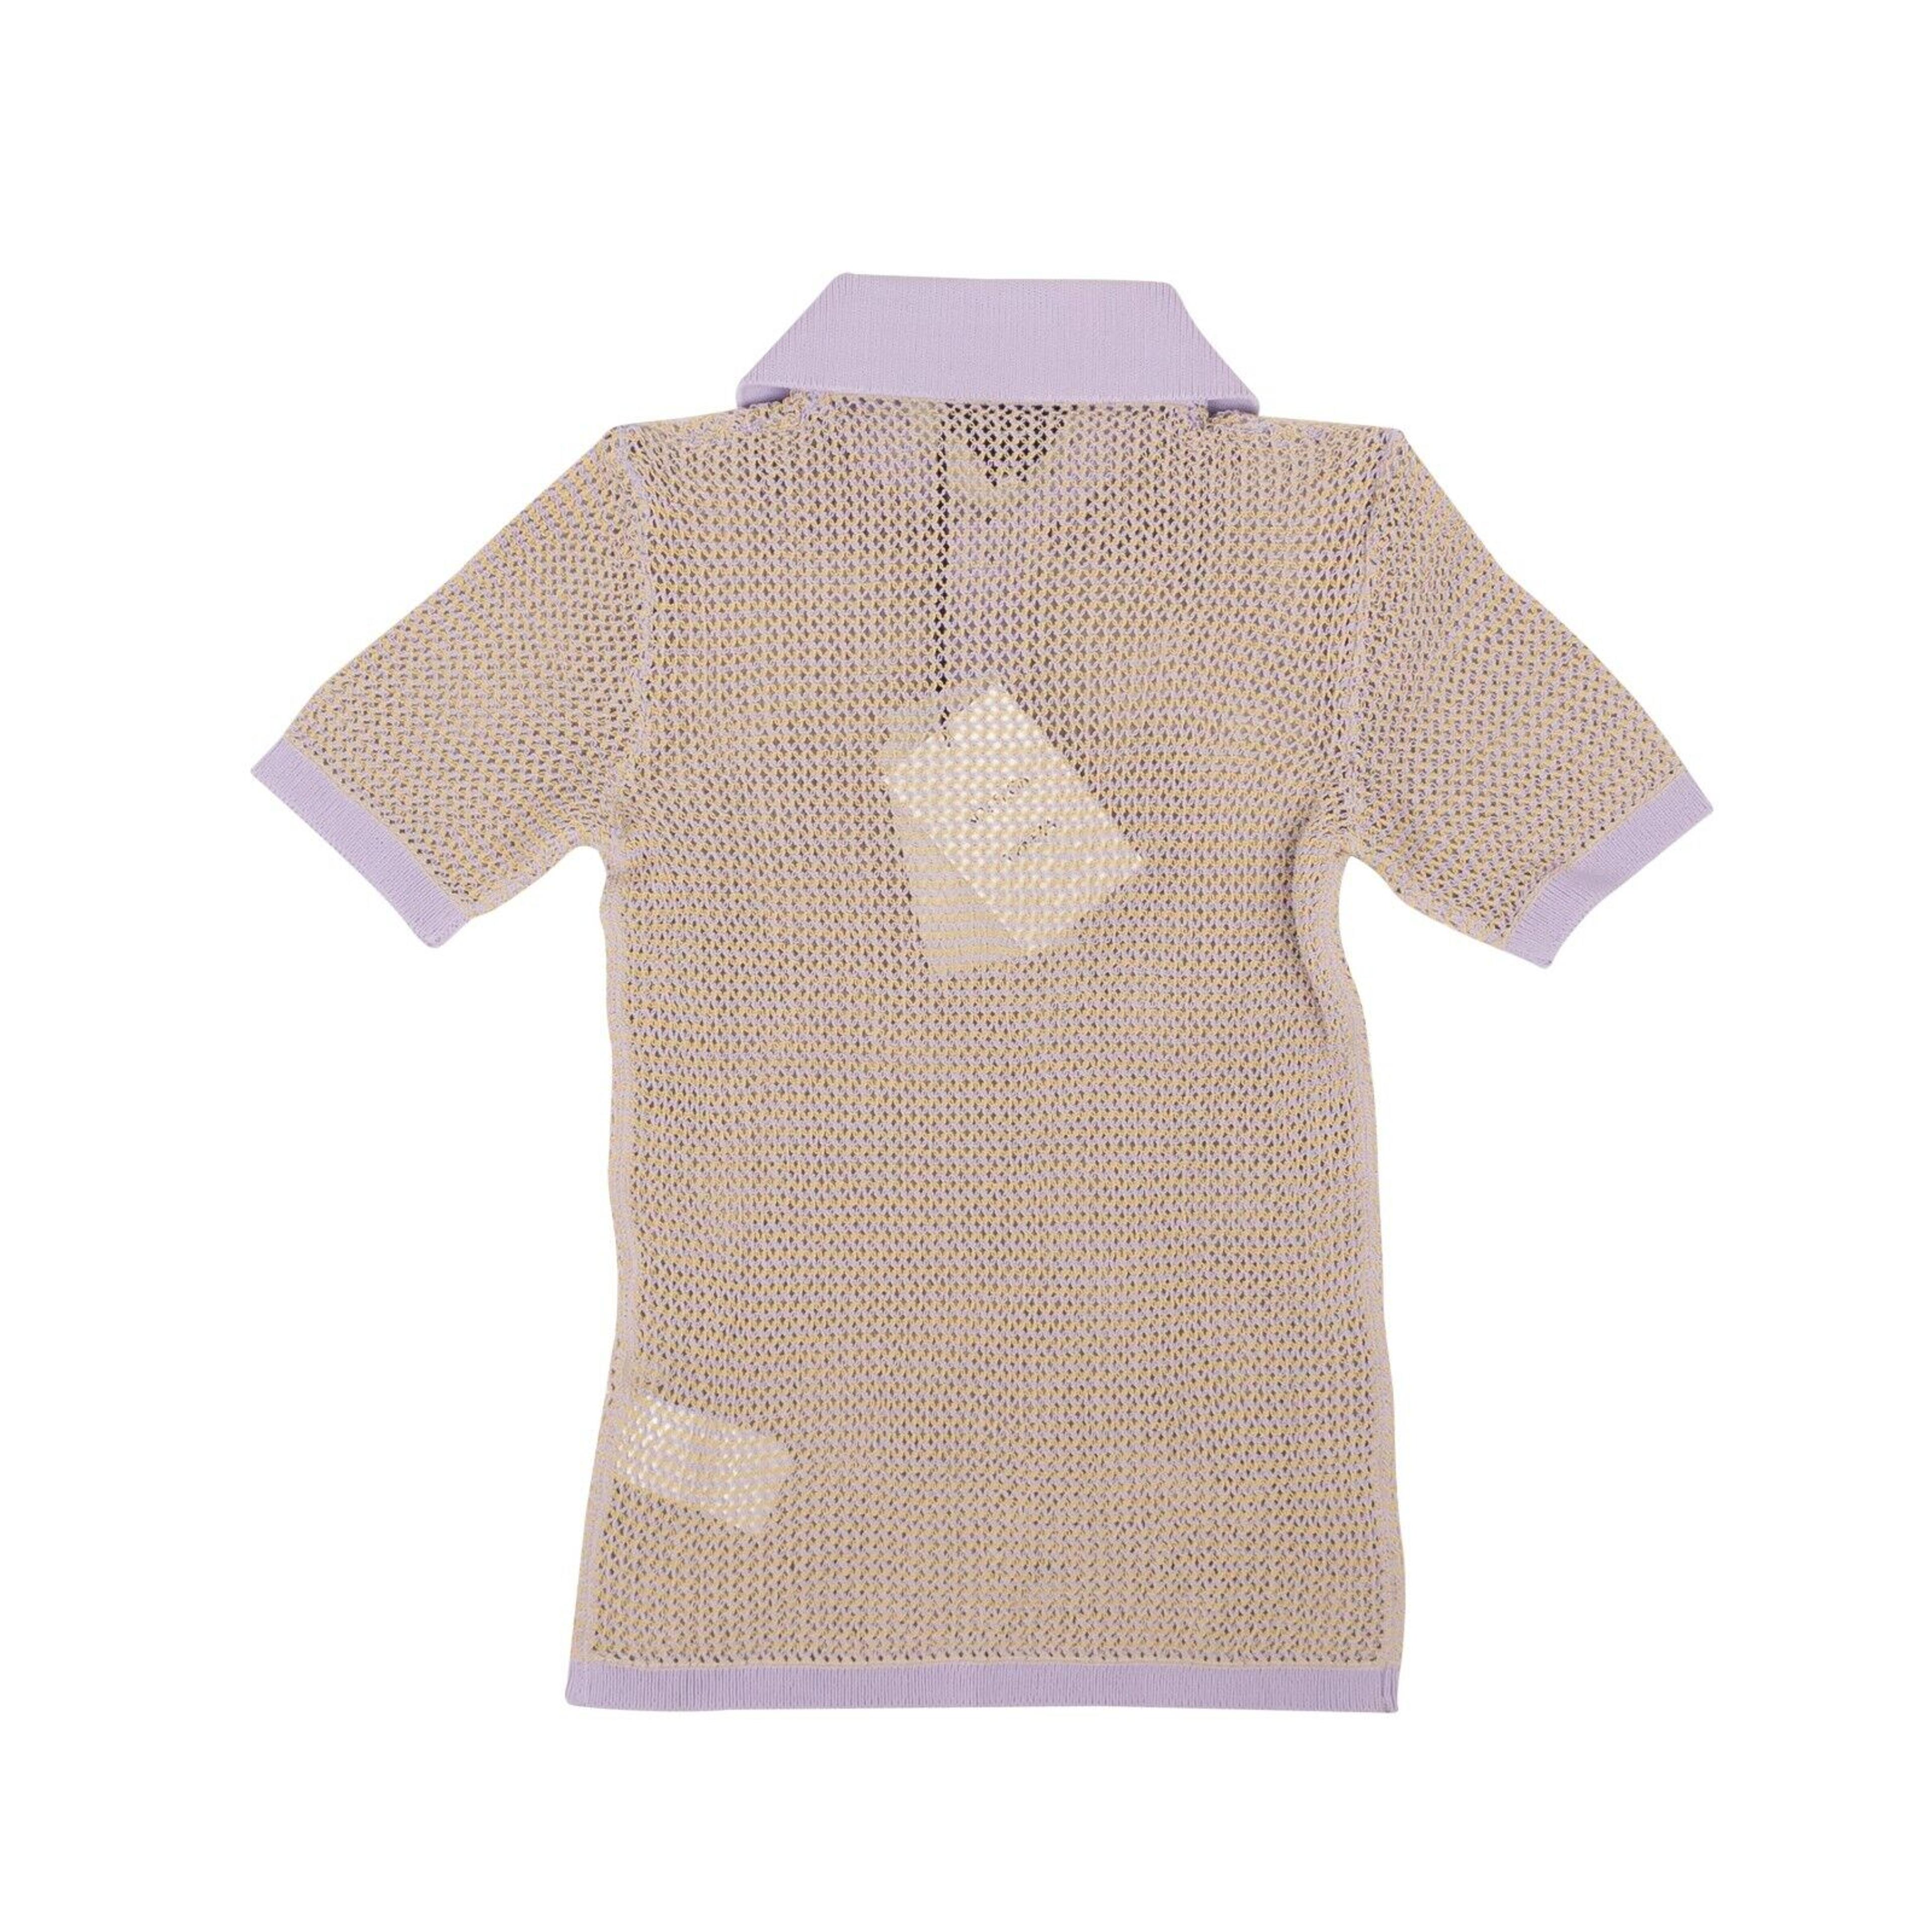 Alternate View 2 of Lavender Fishnet Short Sleeve Polo Shirt